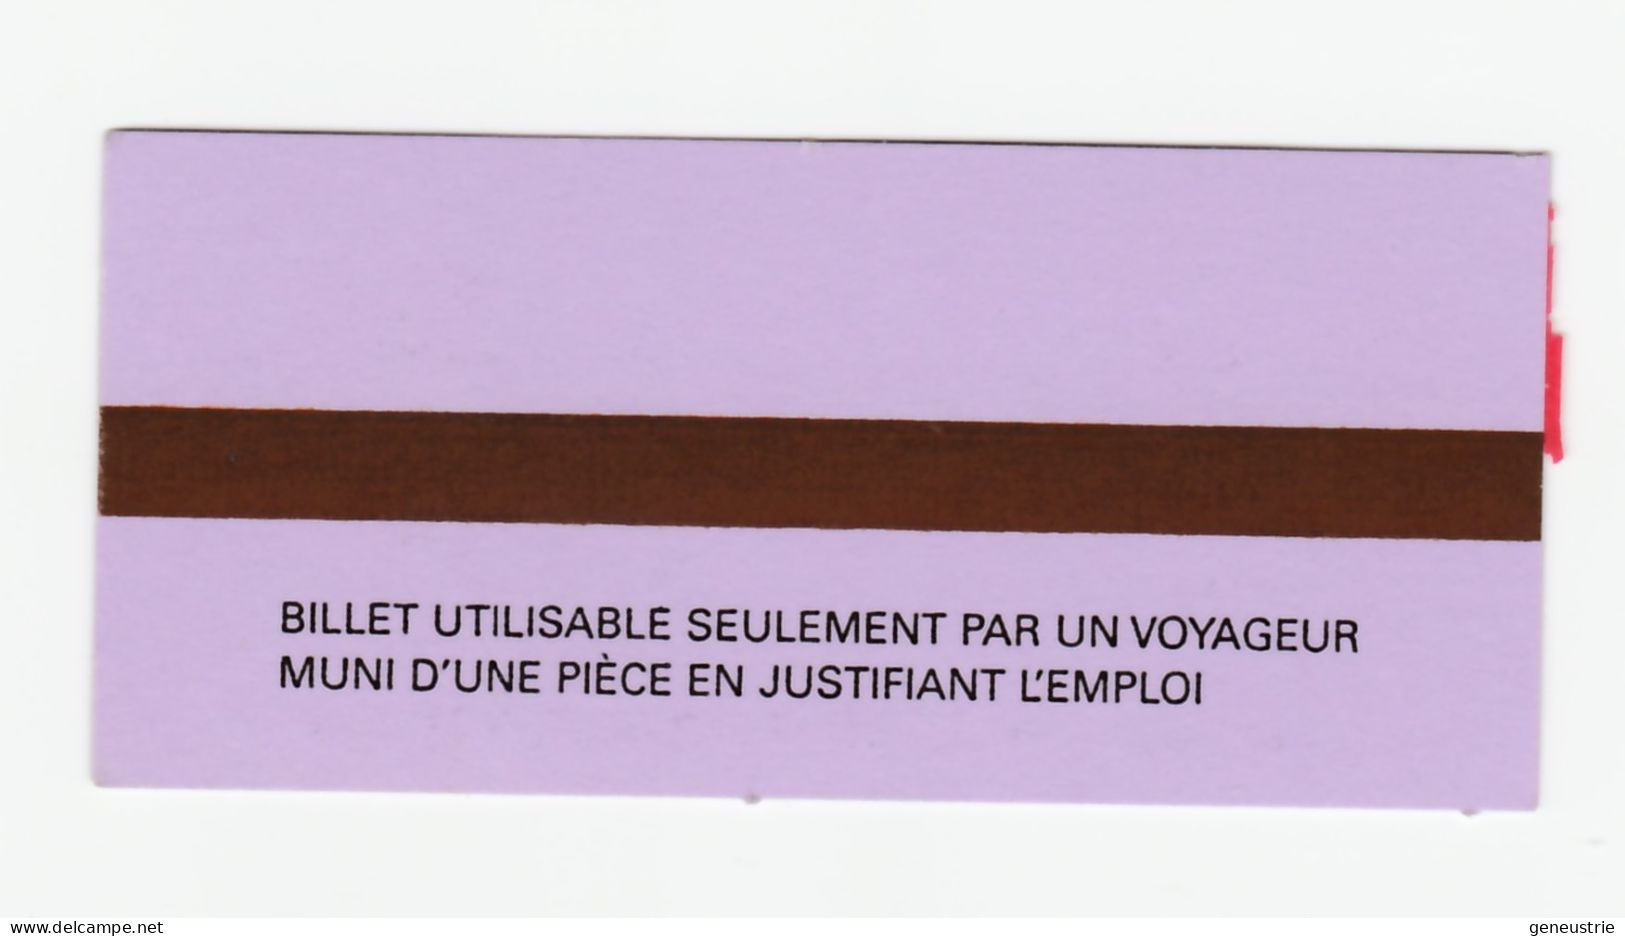 Ticket De Métro Spécial Neuf à Tarif Réduit 2003/2006 "Sapeur-pompiers De Paris" RATP/SNCF - Métropolitain De Paris - Europe